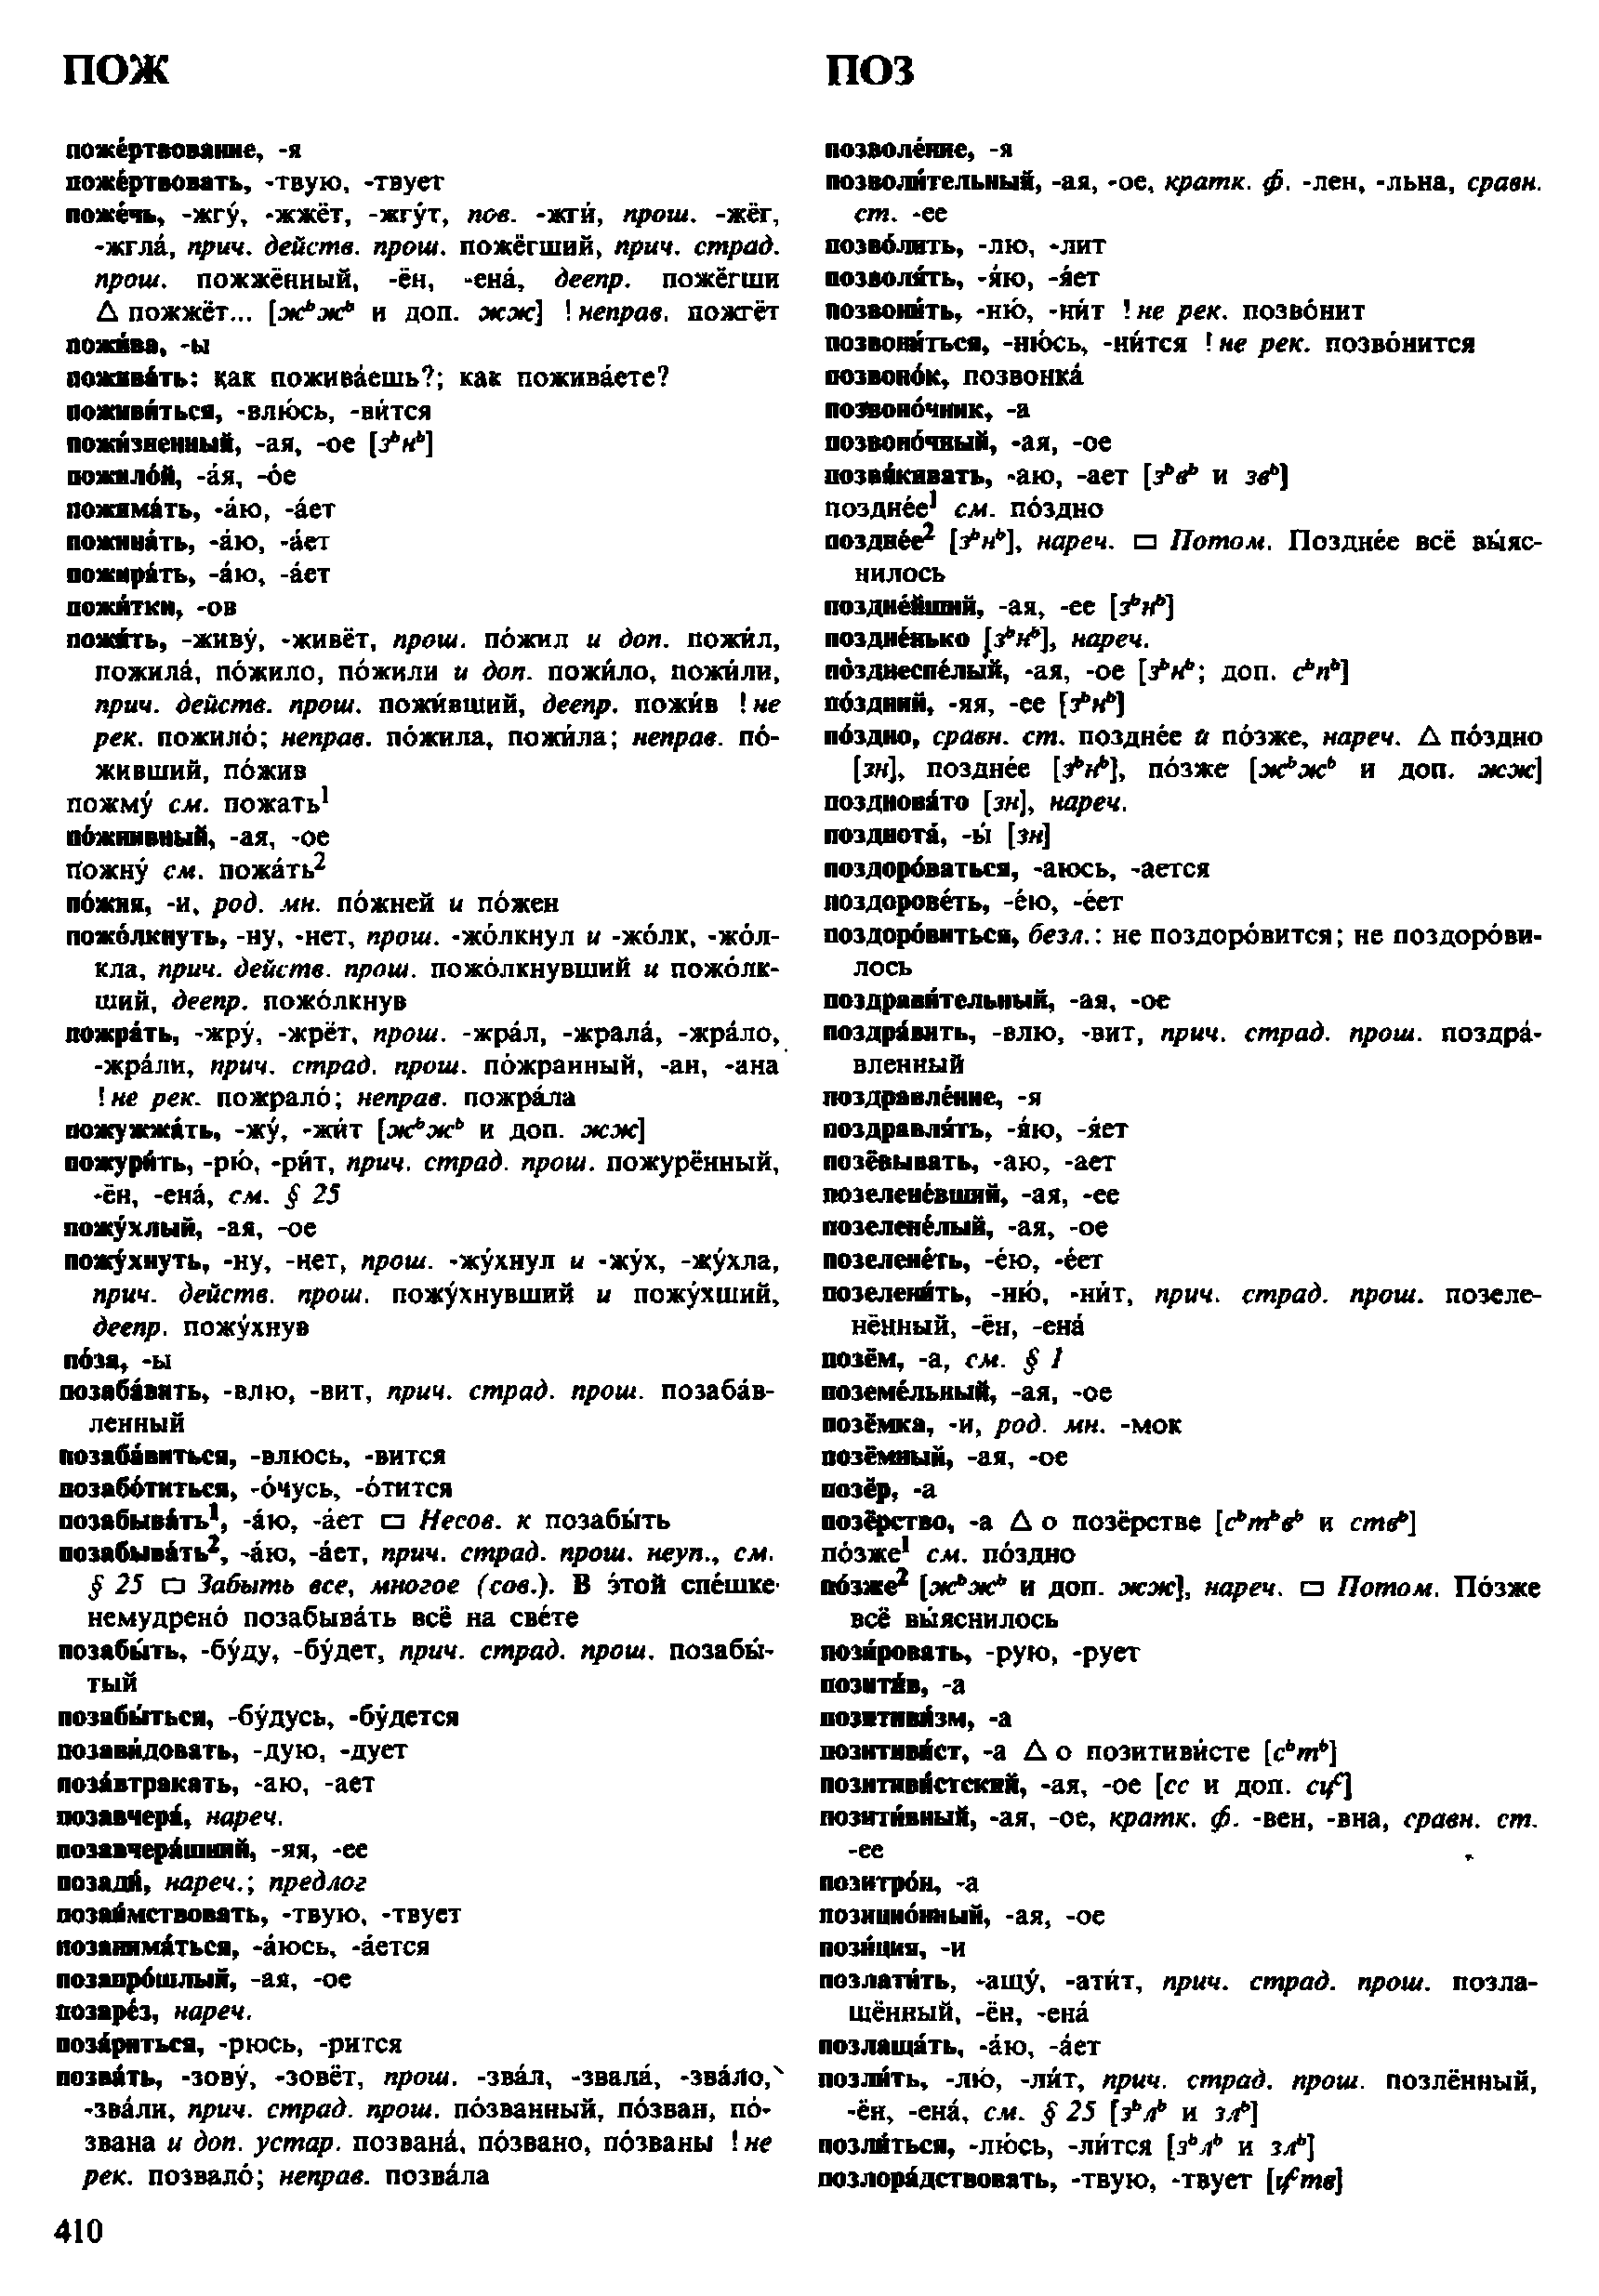 Фотокопия pdf / скан страницы 410 орфоэпического словаря под редакцией Аванесова (4 издание, 1988 год)